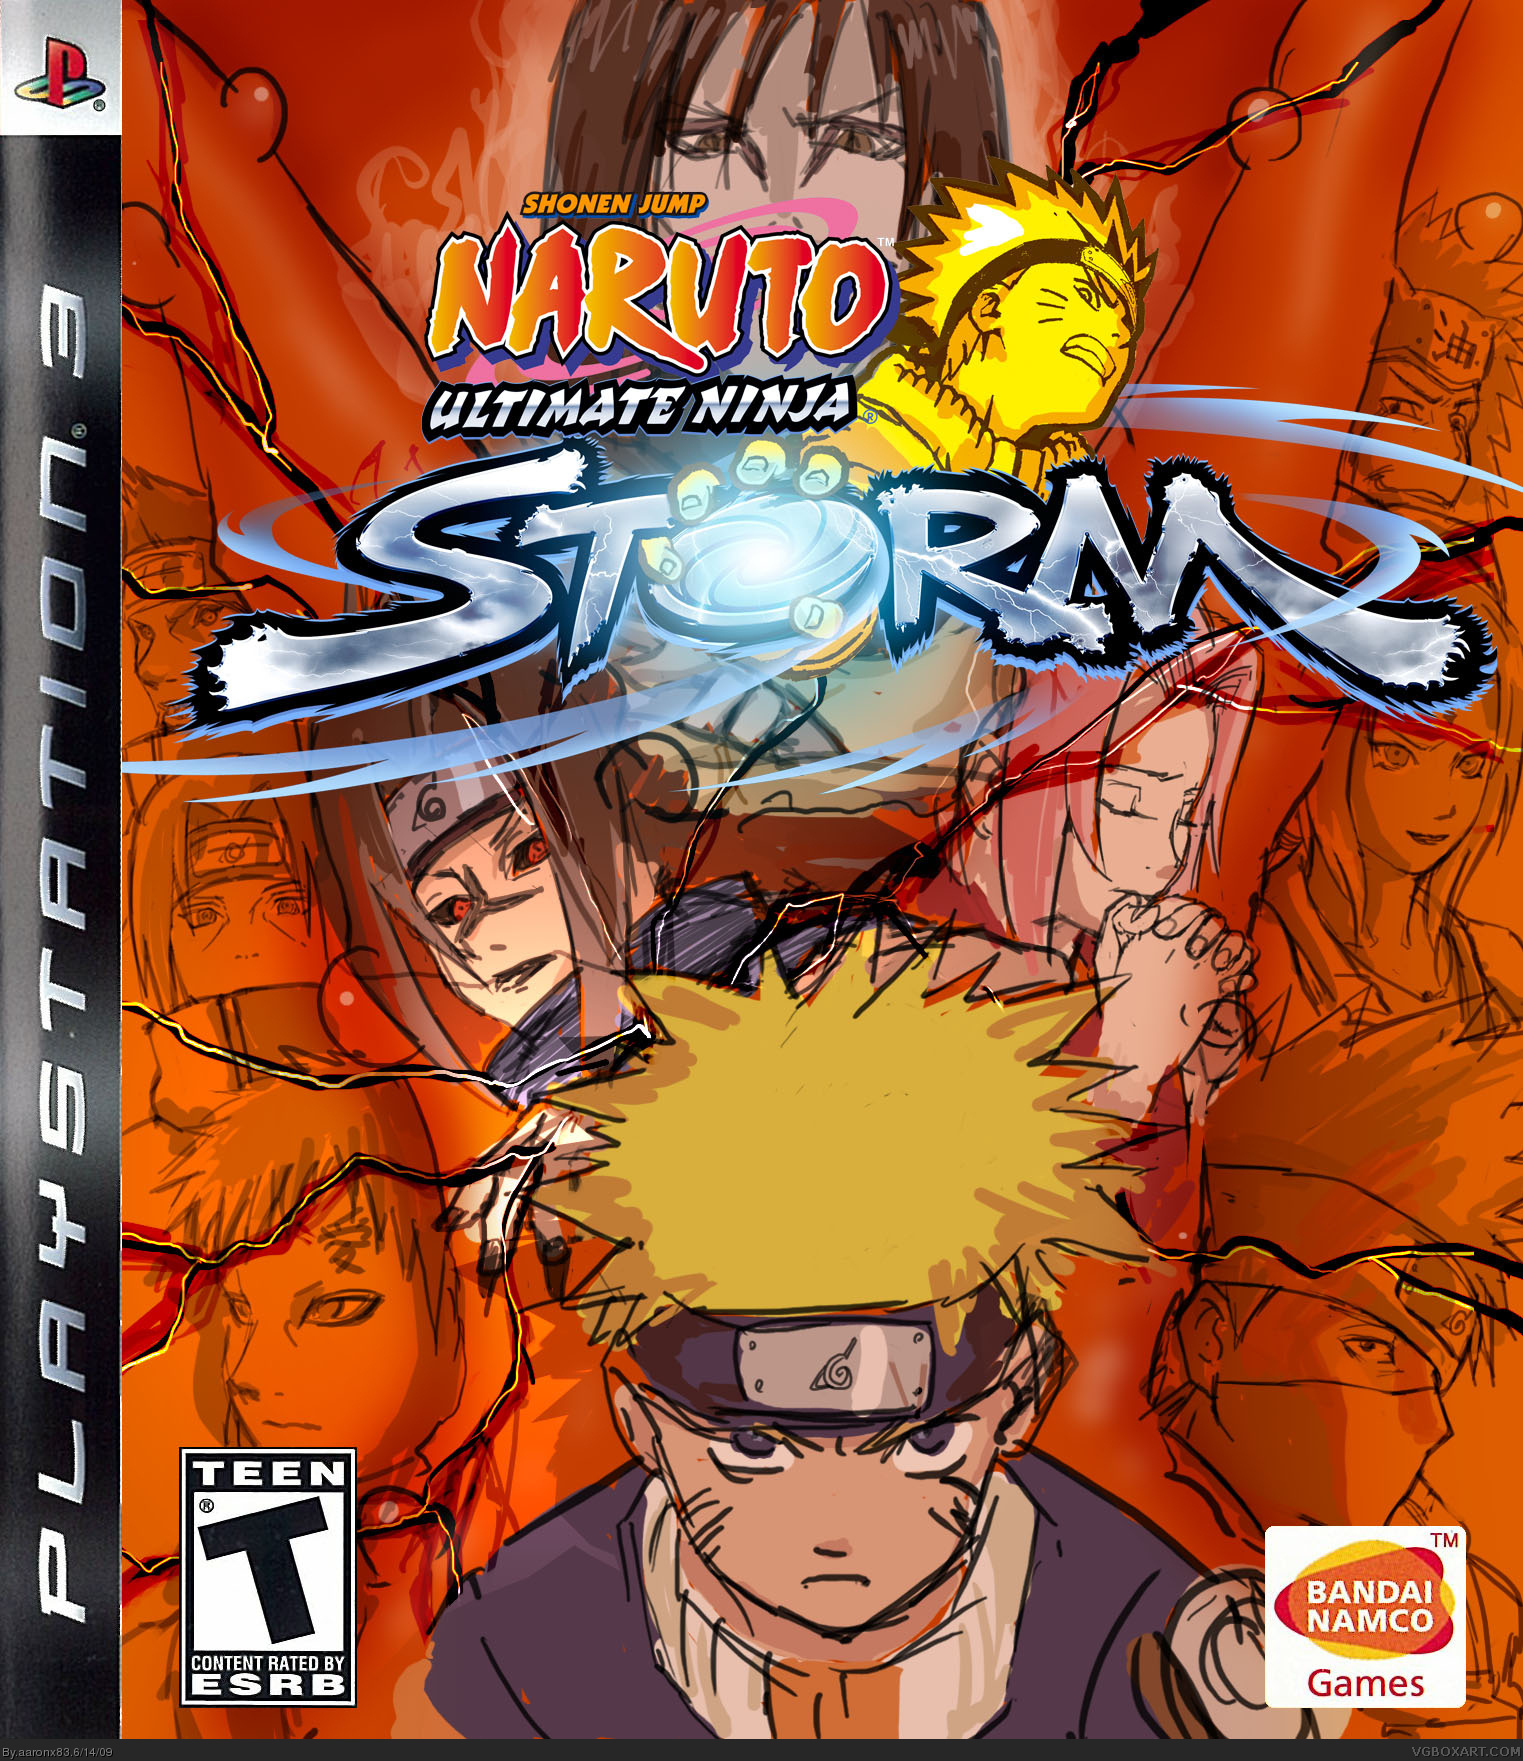 Naruto: Ultimate Ninja Storm box cover